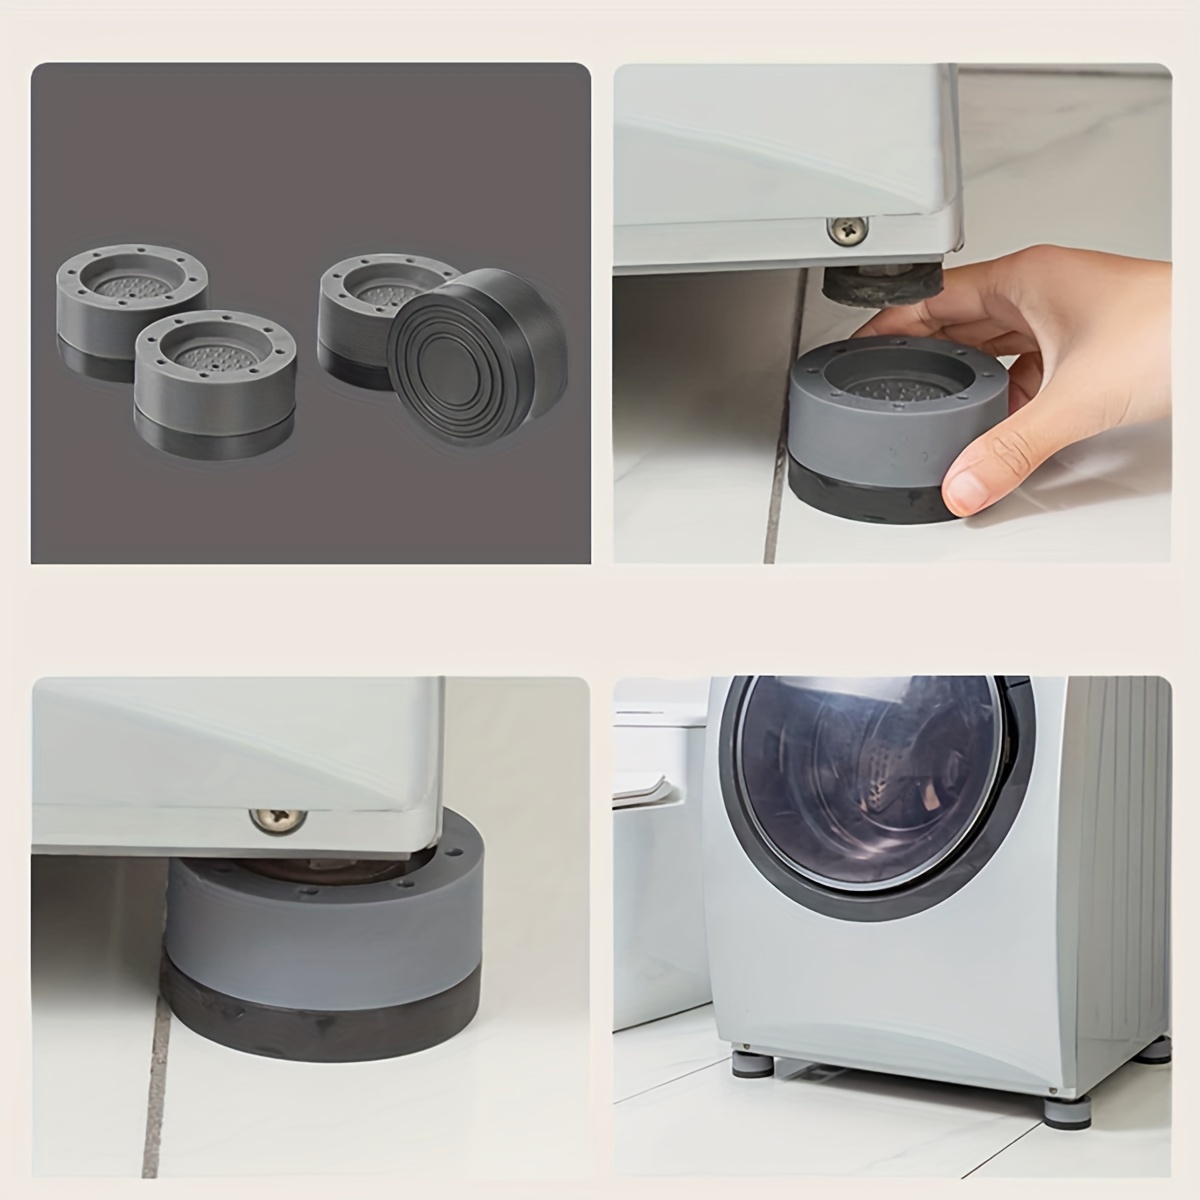 Patins anti-vibration pour machine à laver